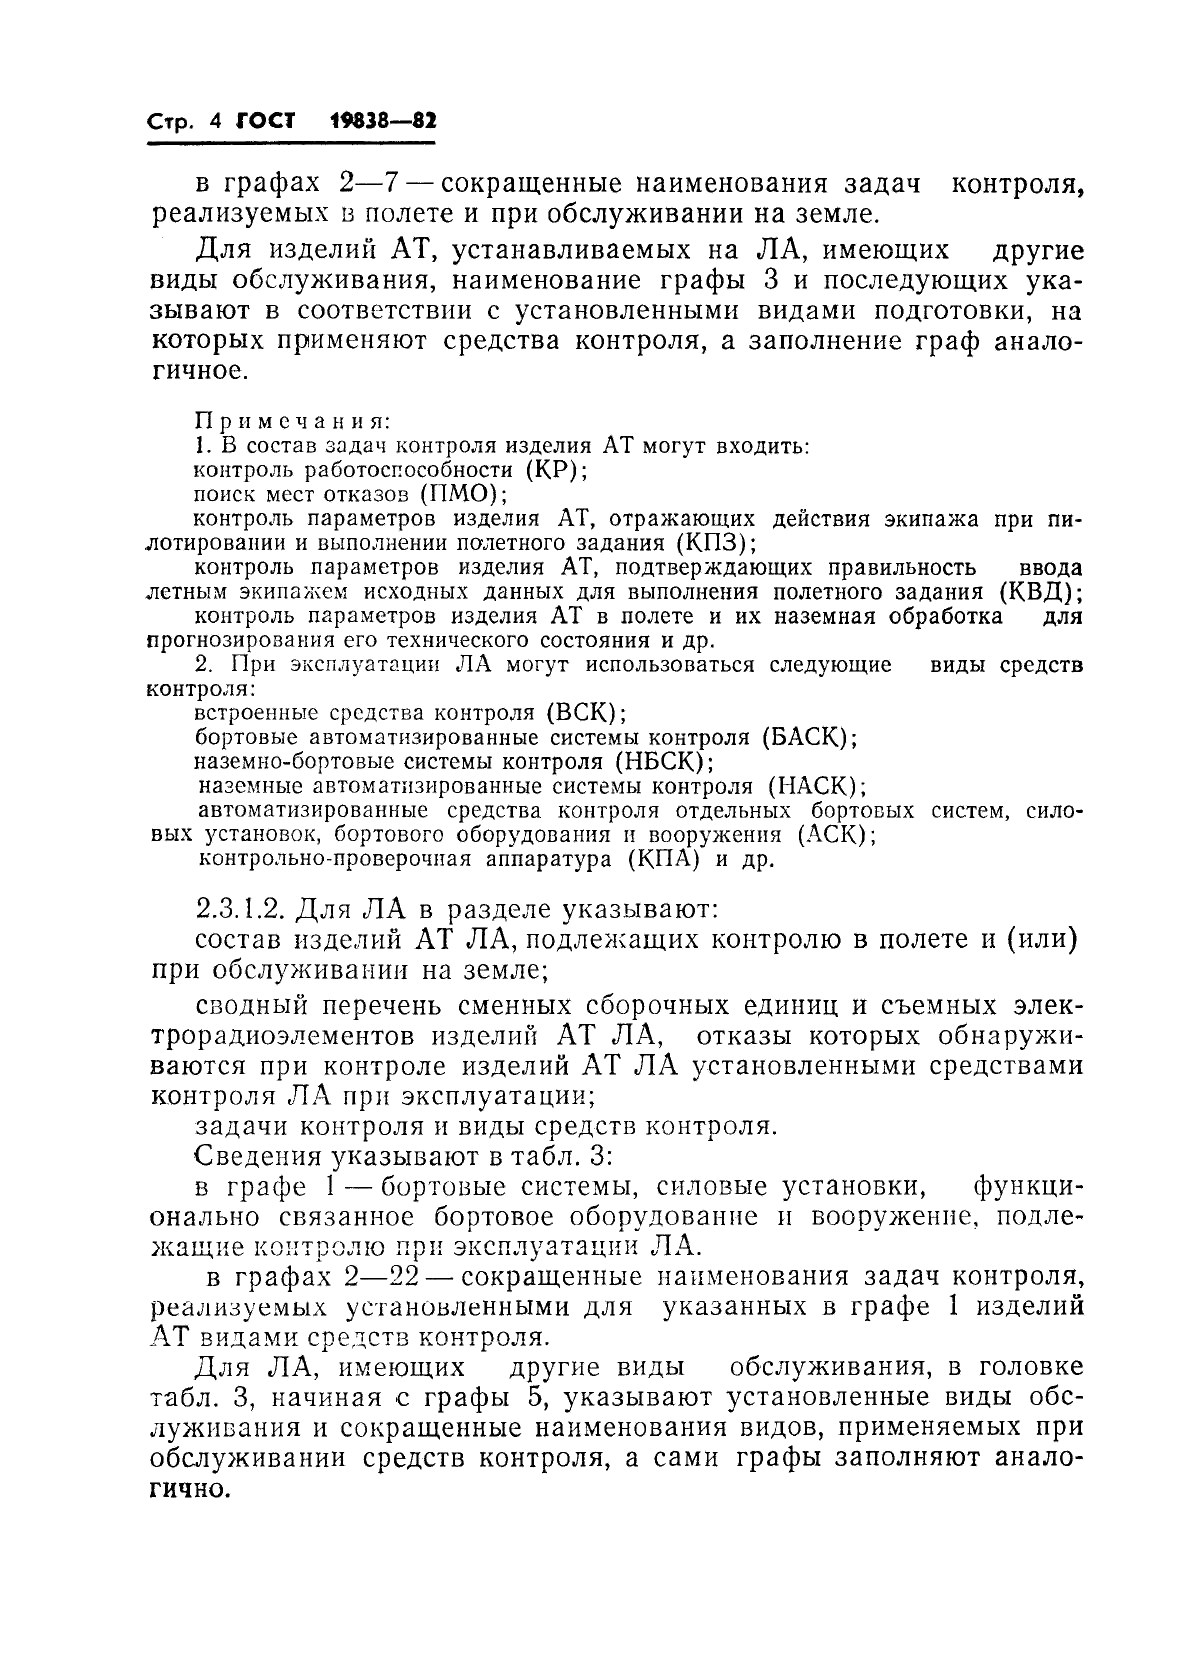 ГОСТ 19838-82 Характеристика контролепригодности изделий авиационной техники. Правила изложения и оформления (фото 5 из 21)